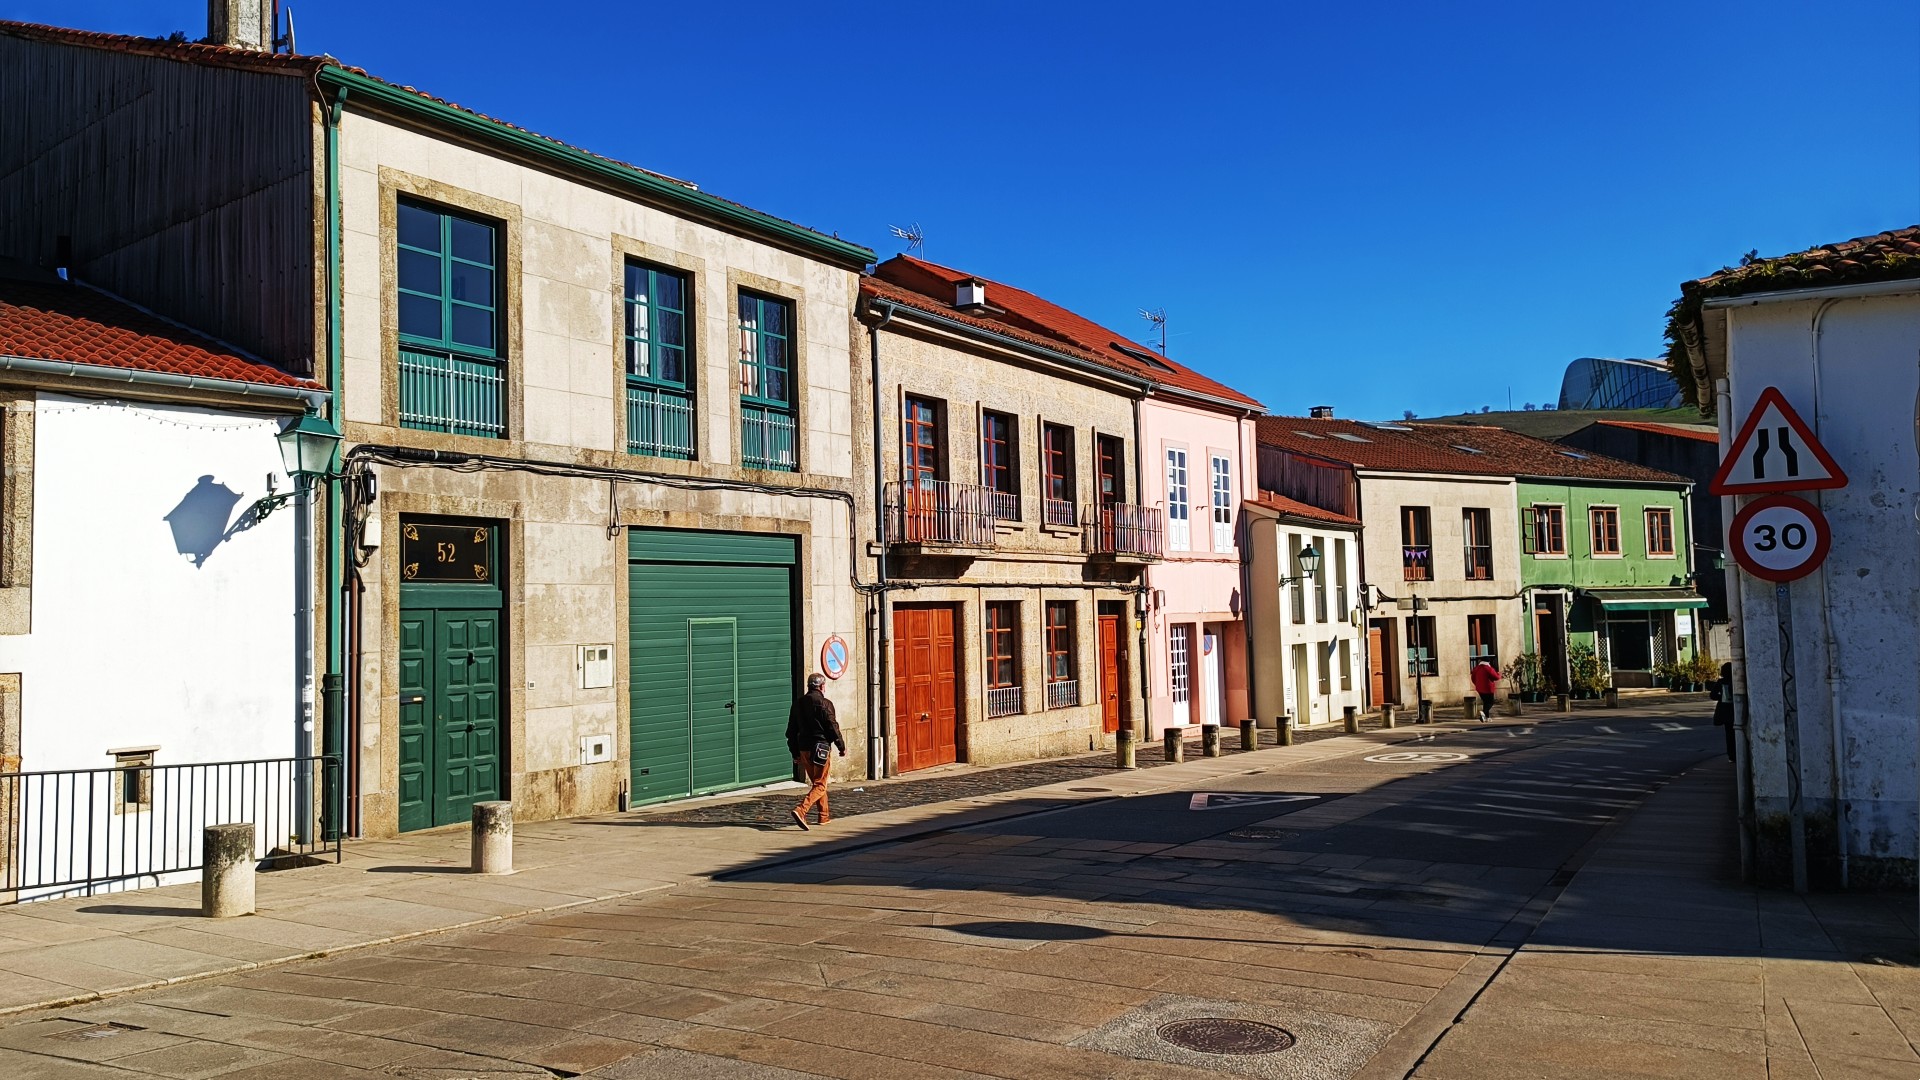 Ubicado entre la vía del tren y la Ciudad de la Cultura de Galicia, O Castiñeiriño es una zona encantadora de Santiago de Compostela